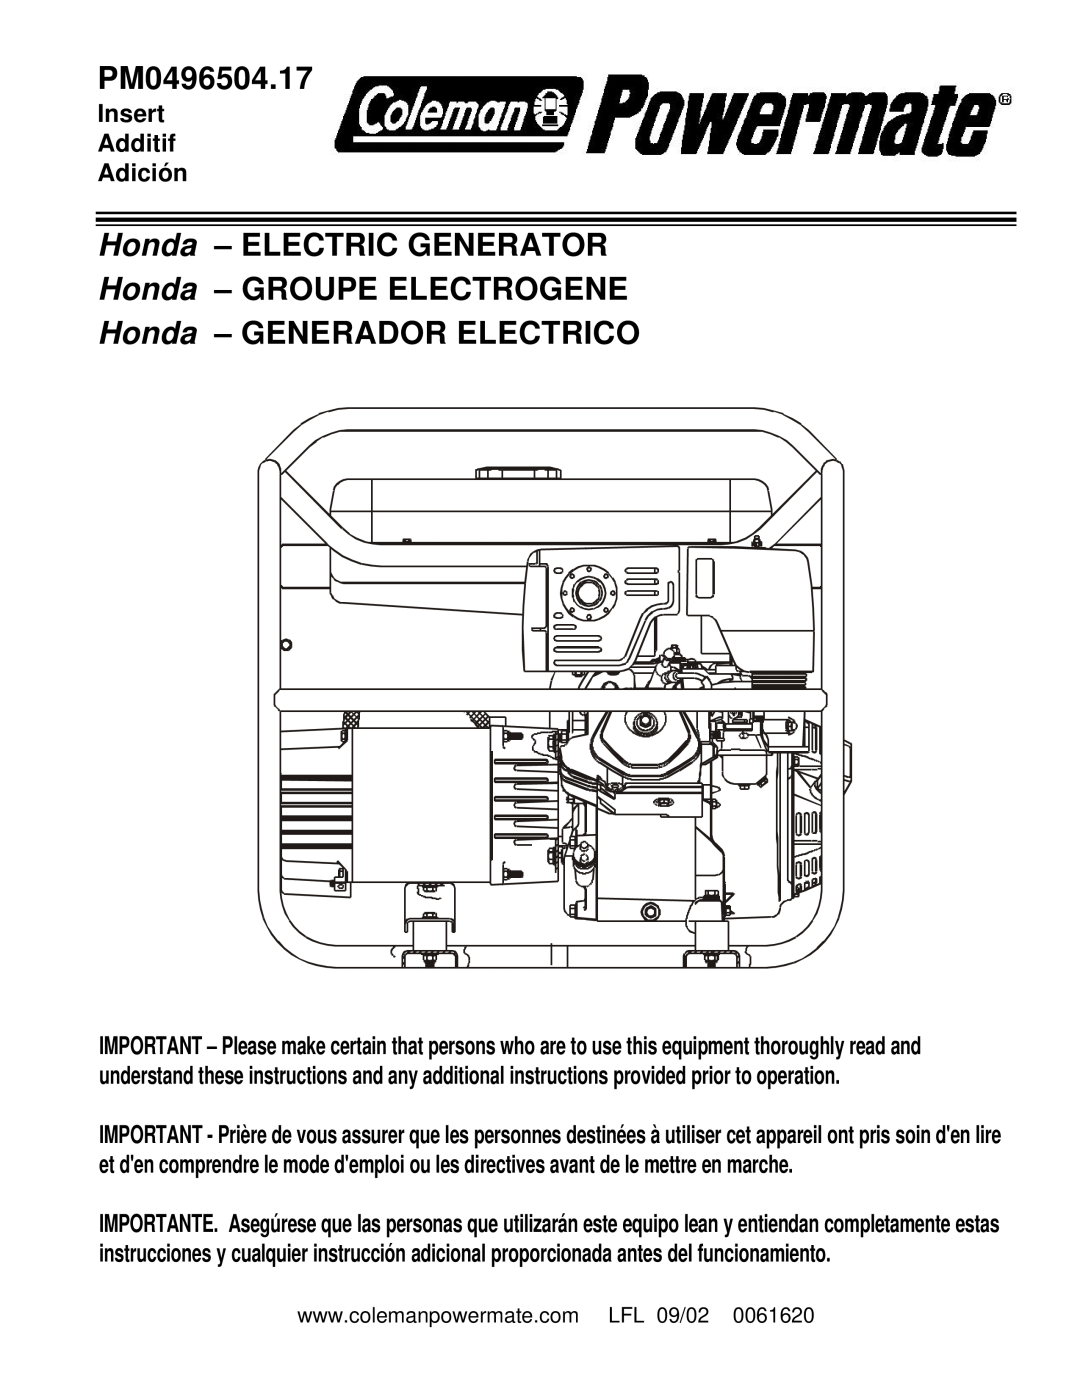 Powermate PM0496504.17 manual Honda – ELECTRIC GENERATOR, Honda – GROUPE ELECTROGENE, Honda – GENERADOR ELECTRICO 